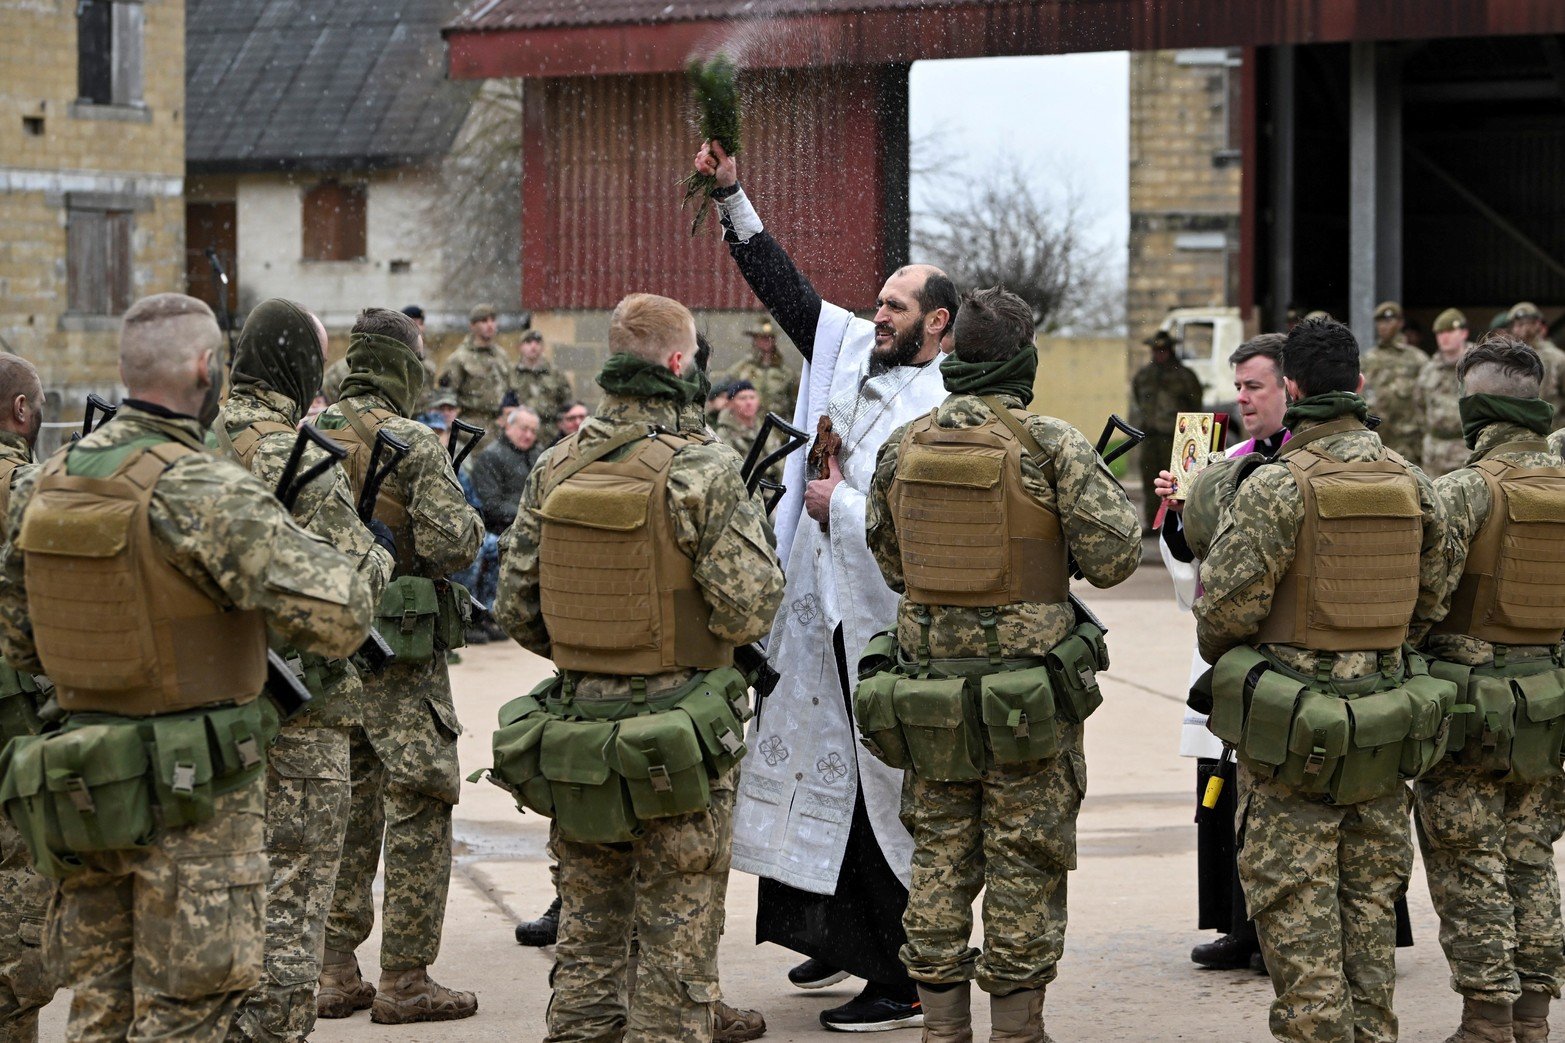 
Un sacerdote ortodoxo ucraniano bendice a los miembros de las Fuerzas Armadas de Ucrania durante una ceremonia para conmemorar un año desde que Rusia invadió Ucrania, en una base de entrenamiento cerca de Salisbury, Gran Bretaña, el 23 de febrero de 2023